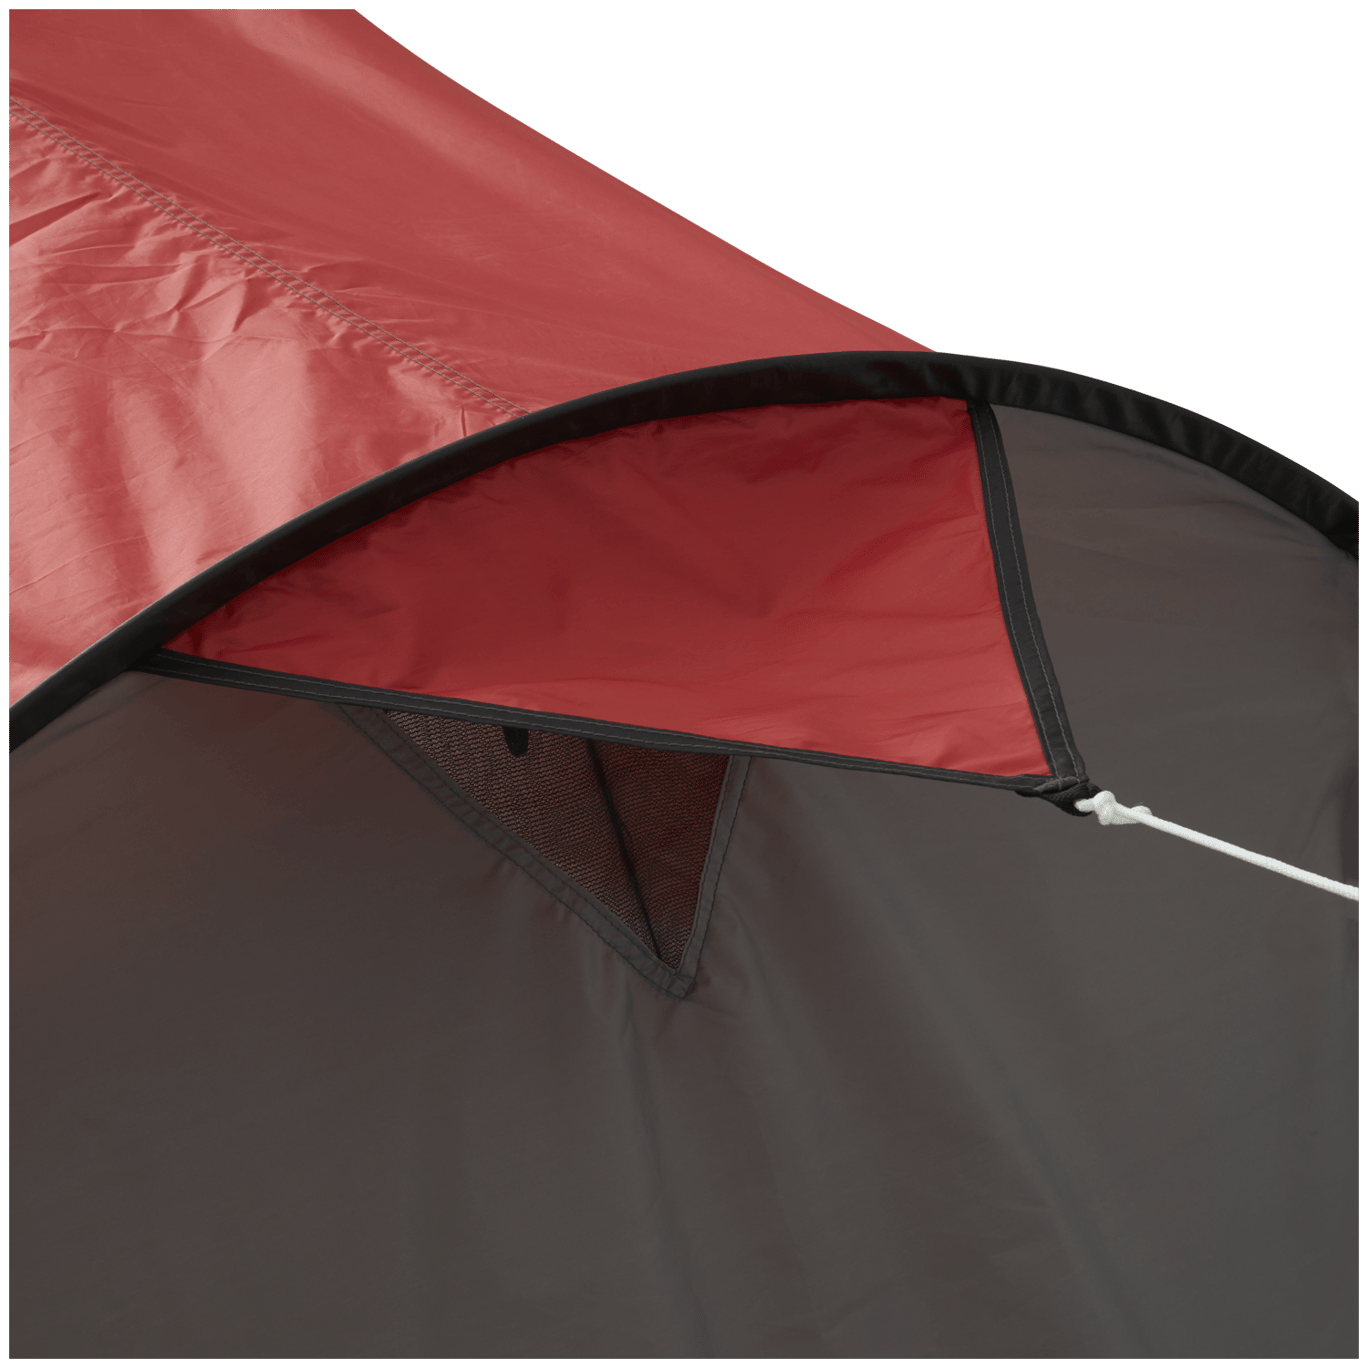 Rode datum beneden Tulpen Froyak pop-up tent | Action.com